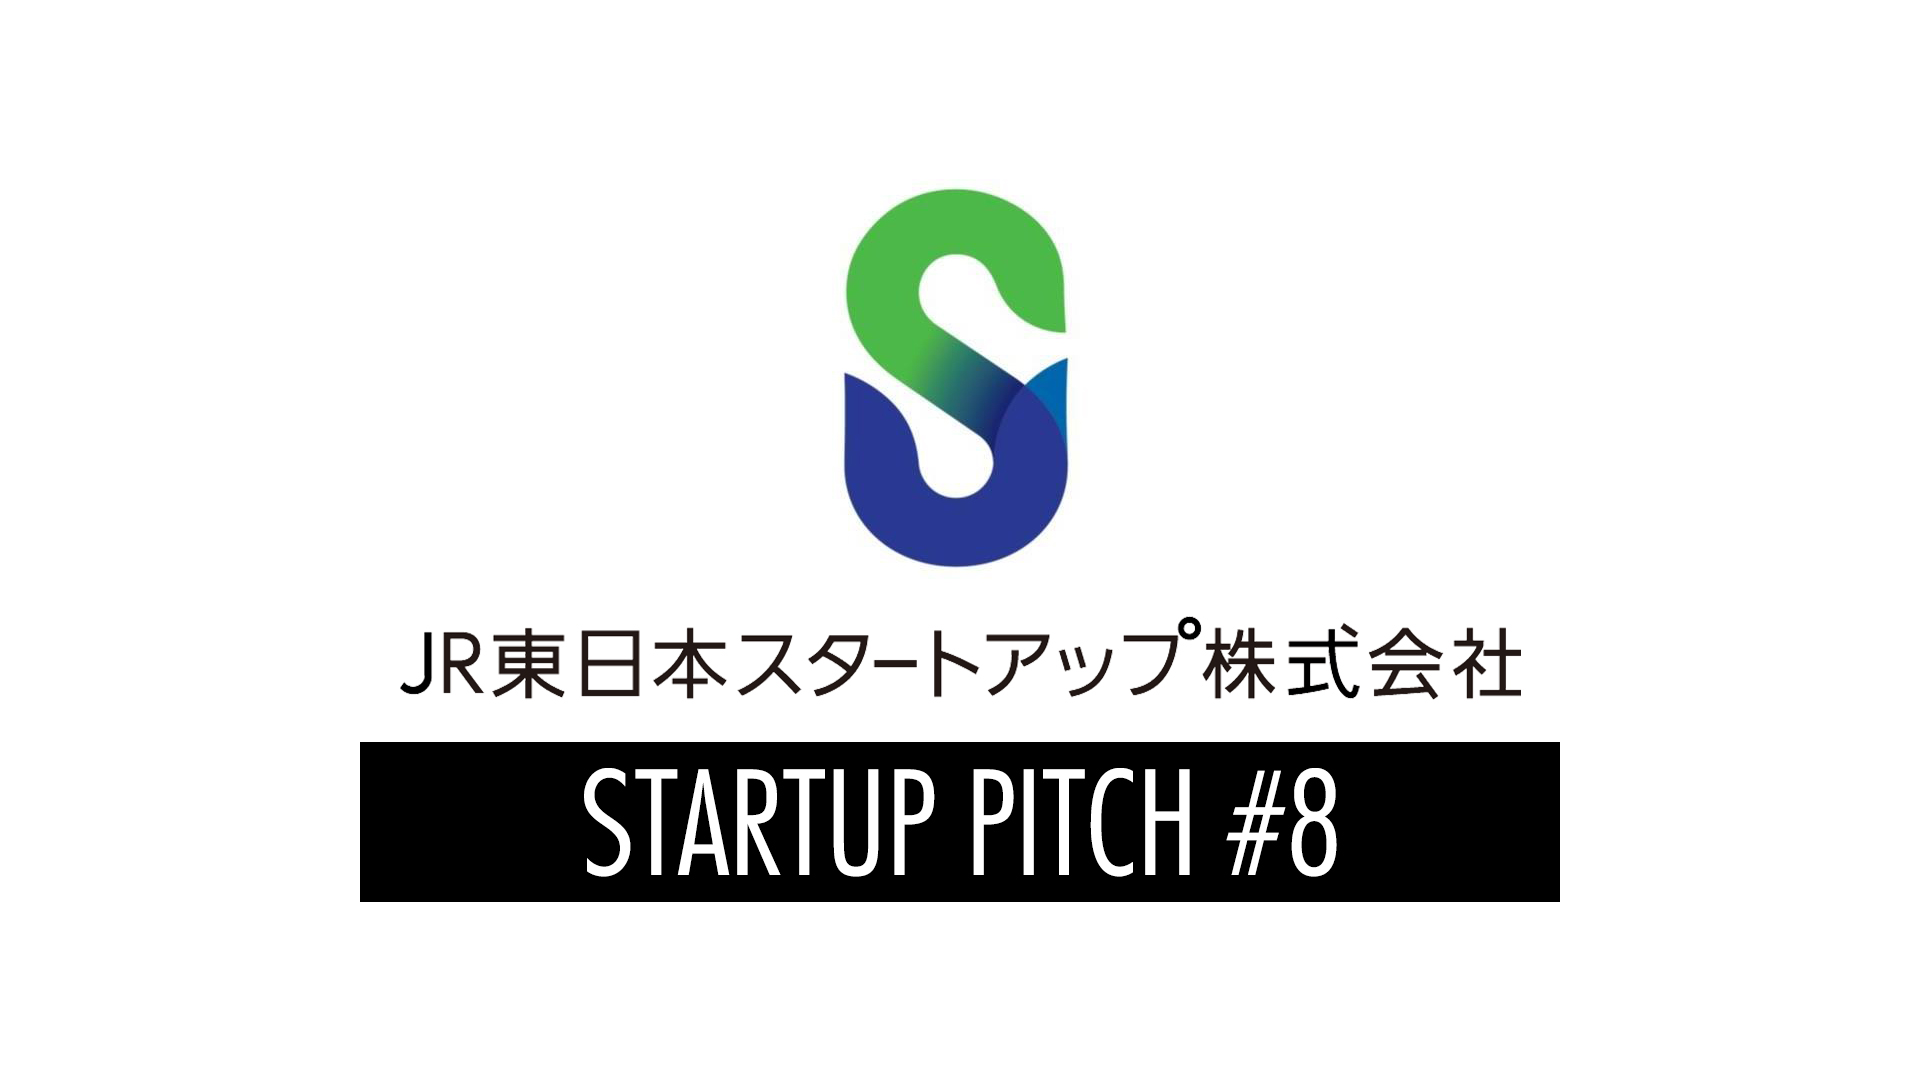 JR東日本スタートアップ（株）主催の「STARTUP PITCH#8」に採択されました